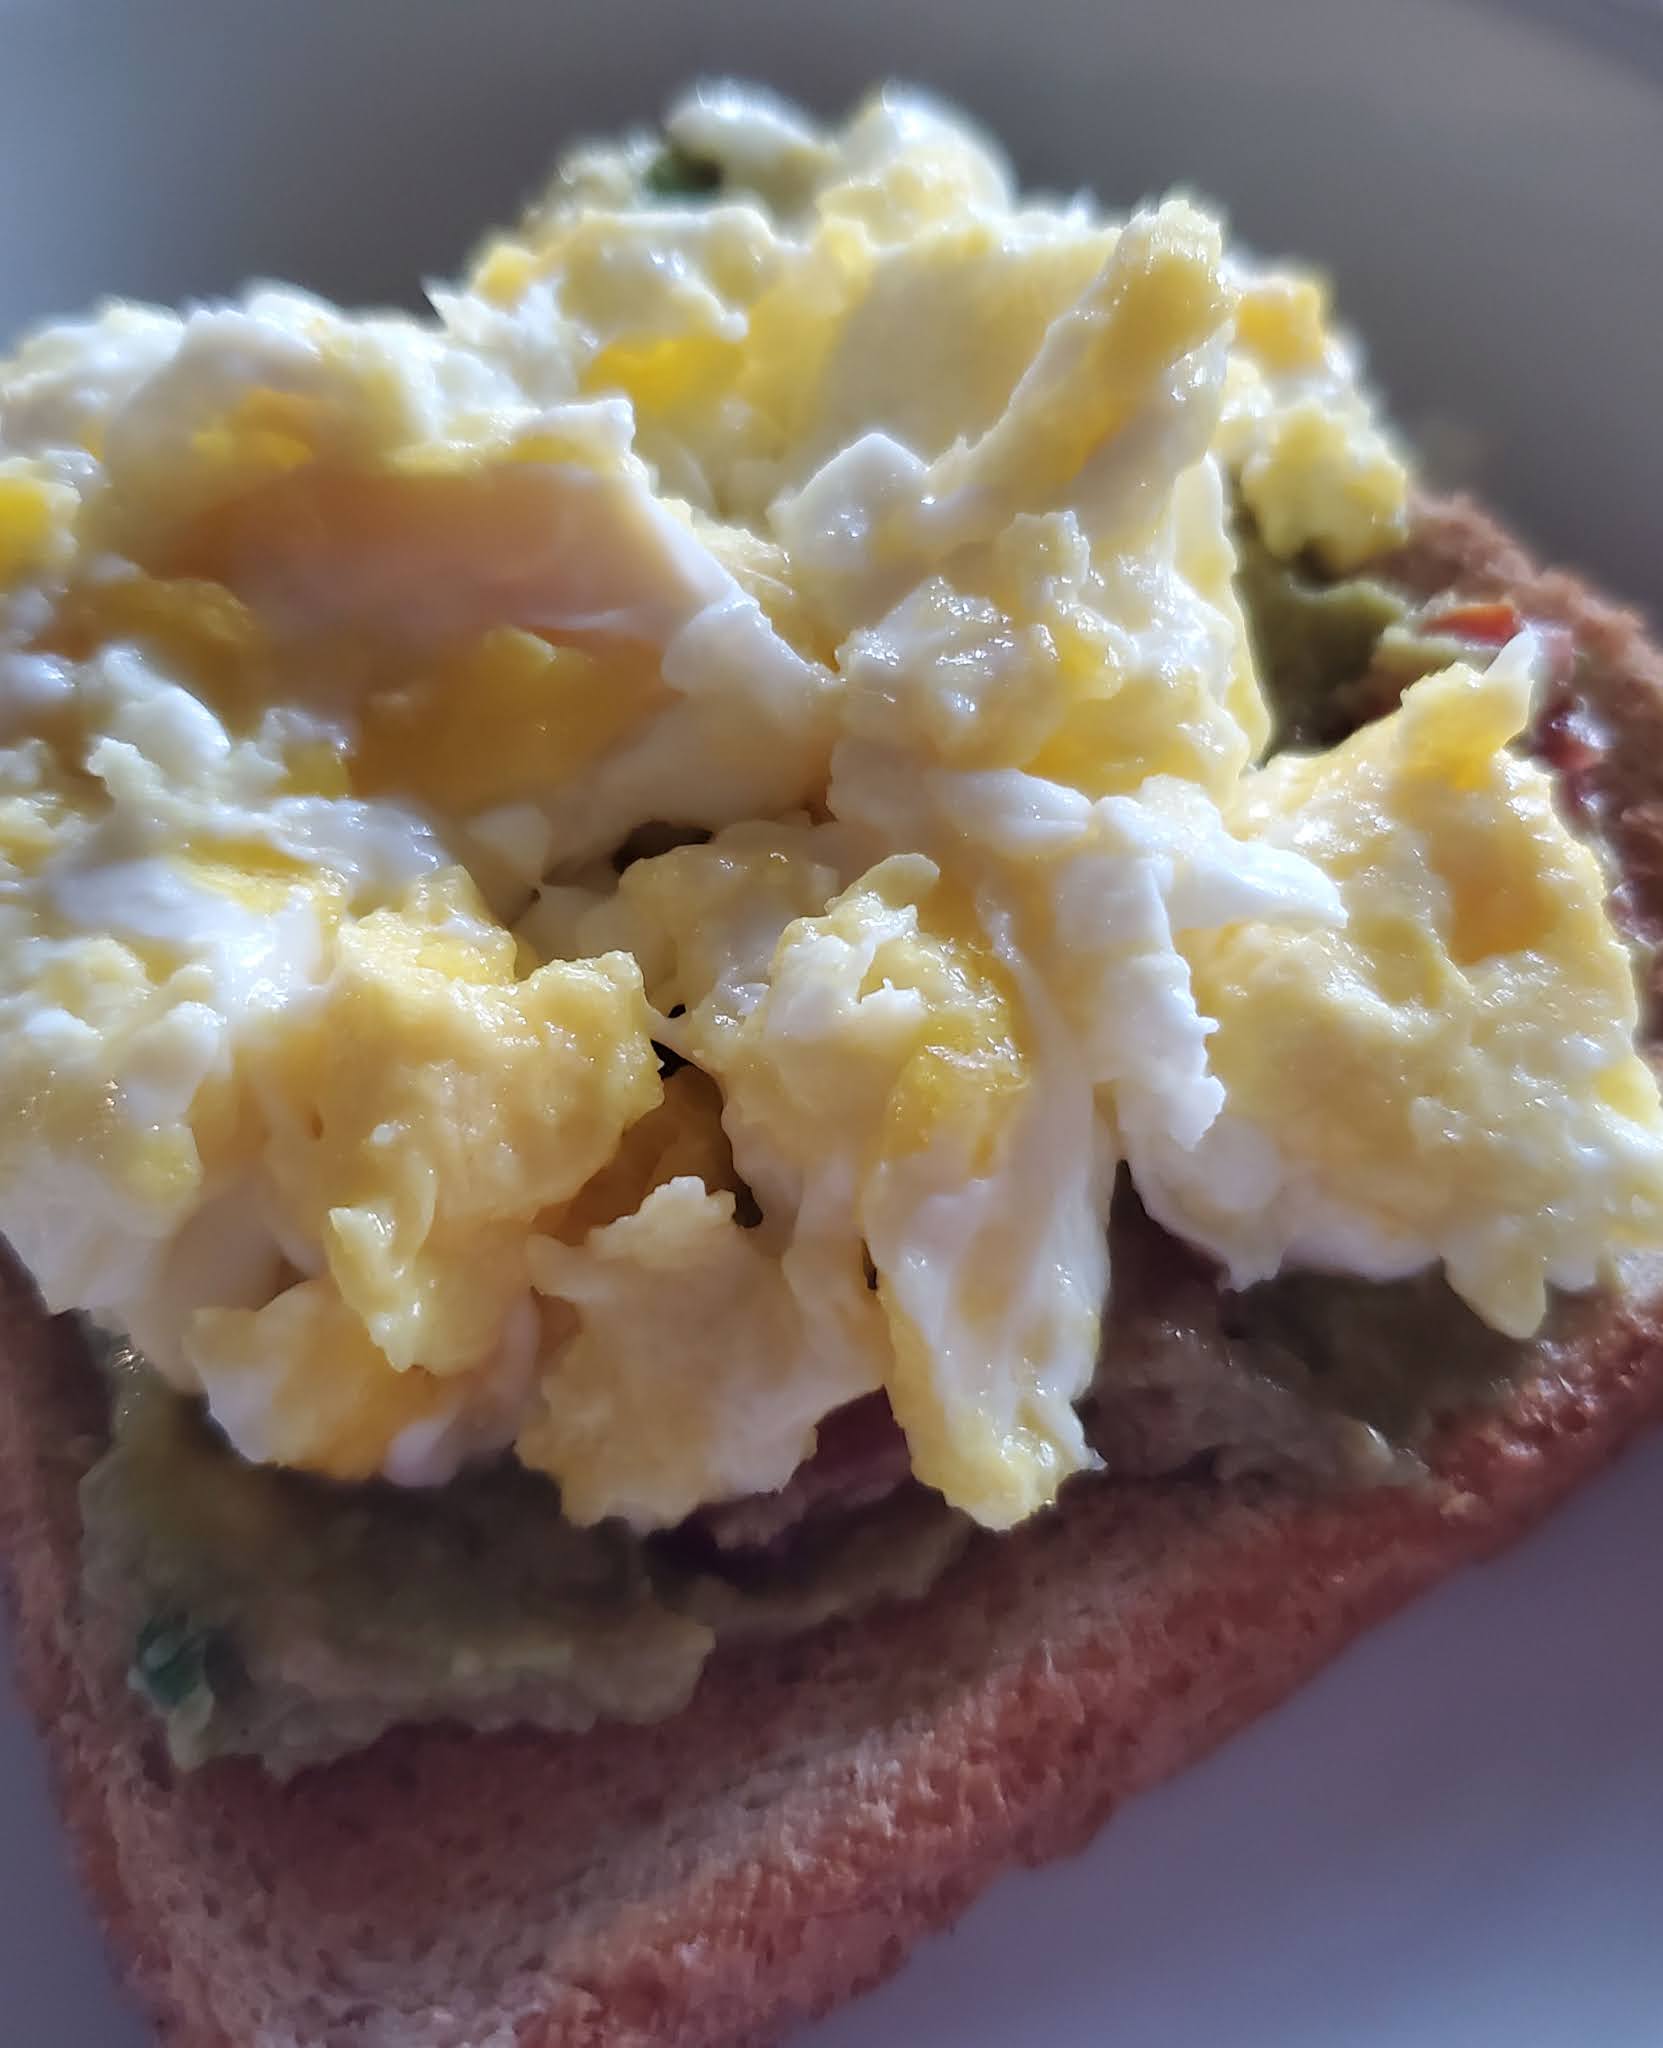 Egg & Guacamole Open-Faced Breakfast Sandwich Recipe